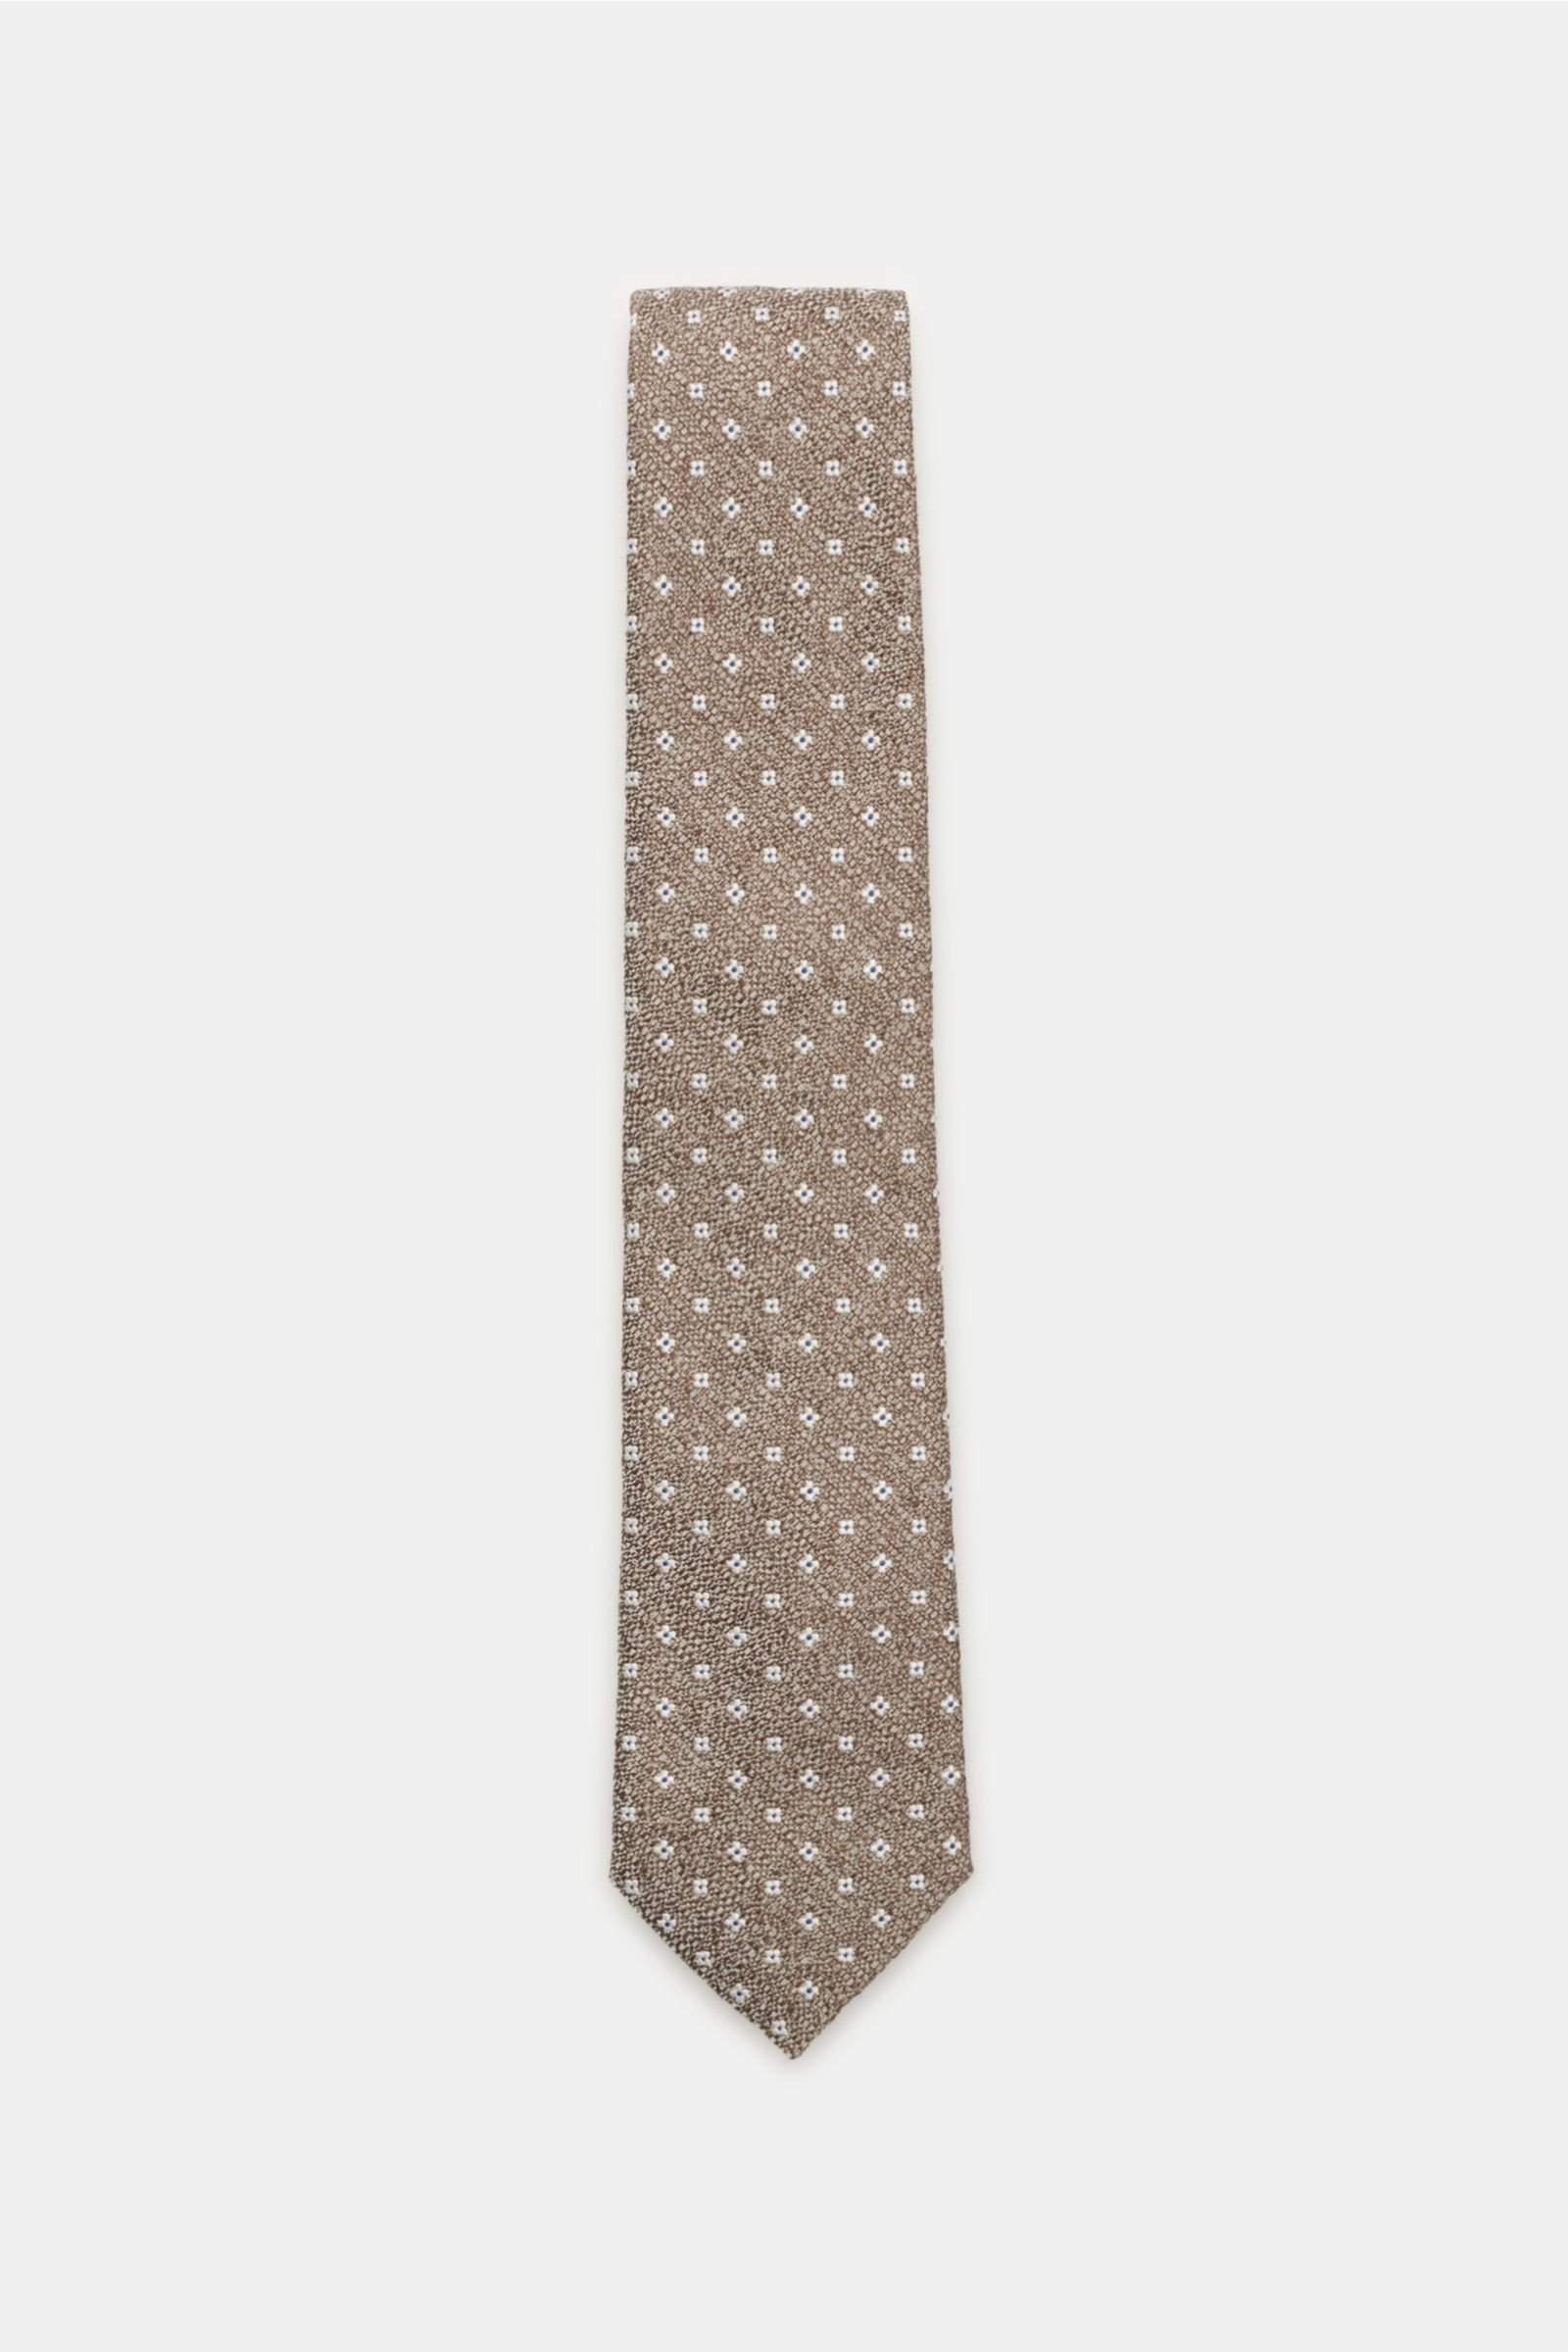 Krawatte graubraun gemustert